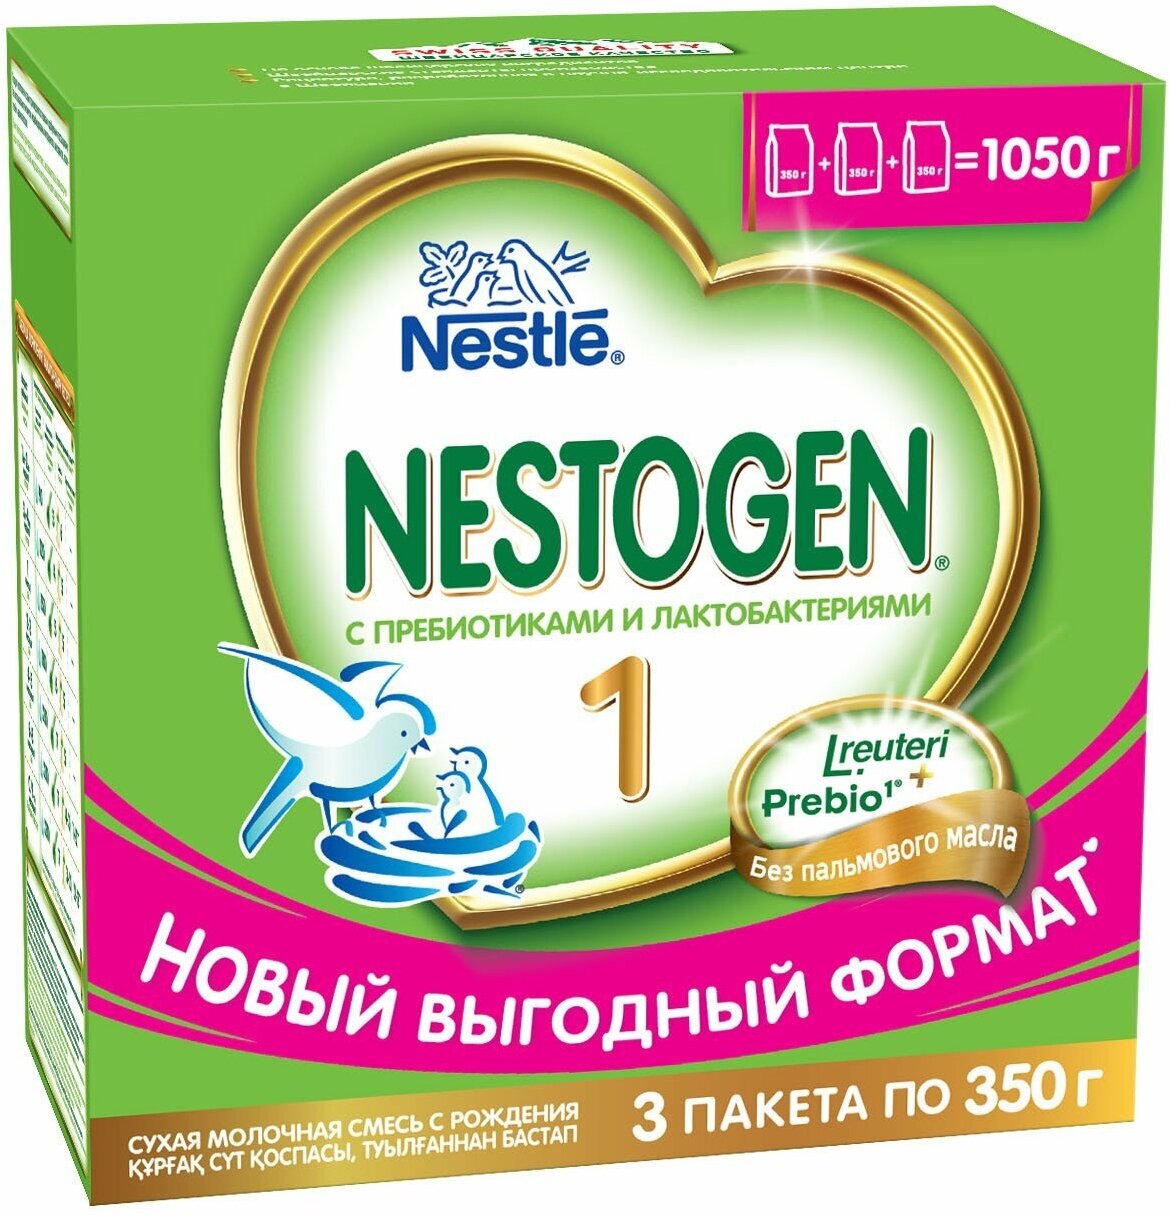 Nestogen® 1 Сухая молочная смесь для регулярного мягкого стула, 600гр - фото №6